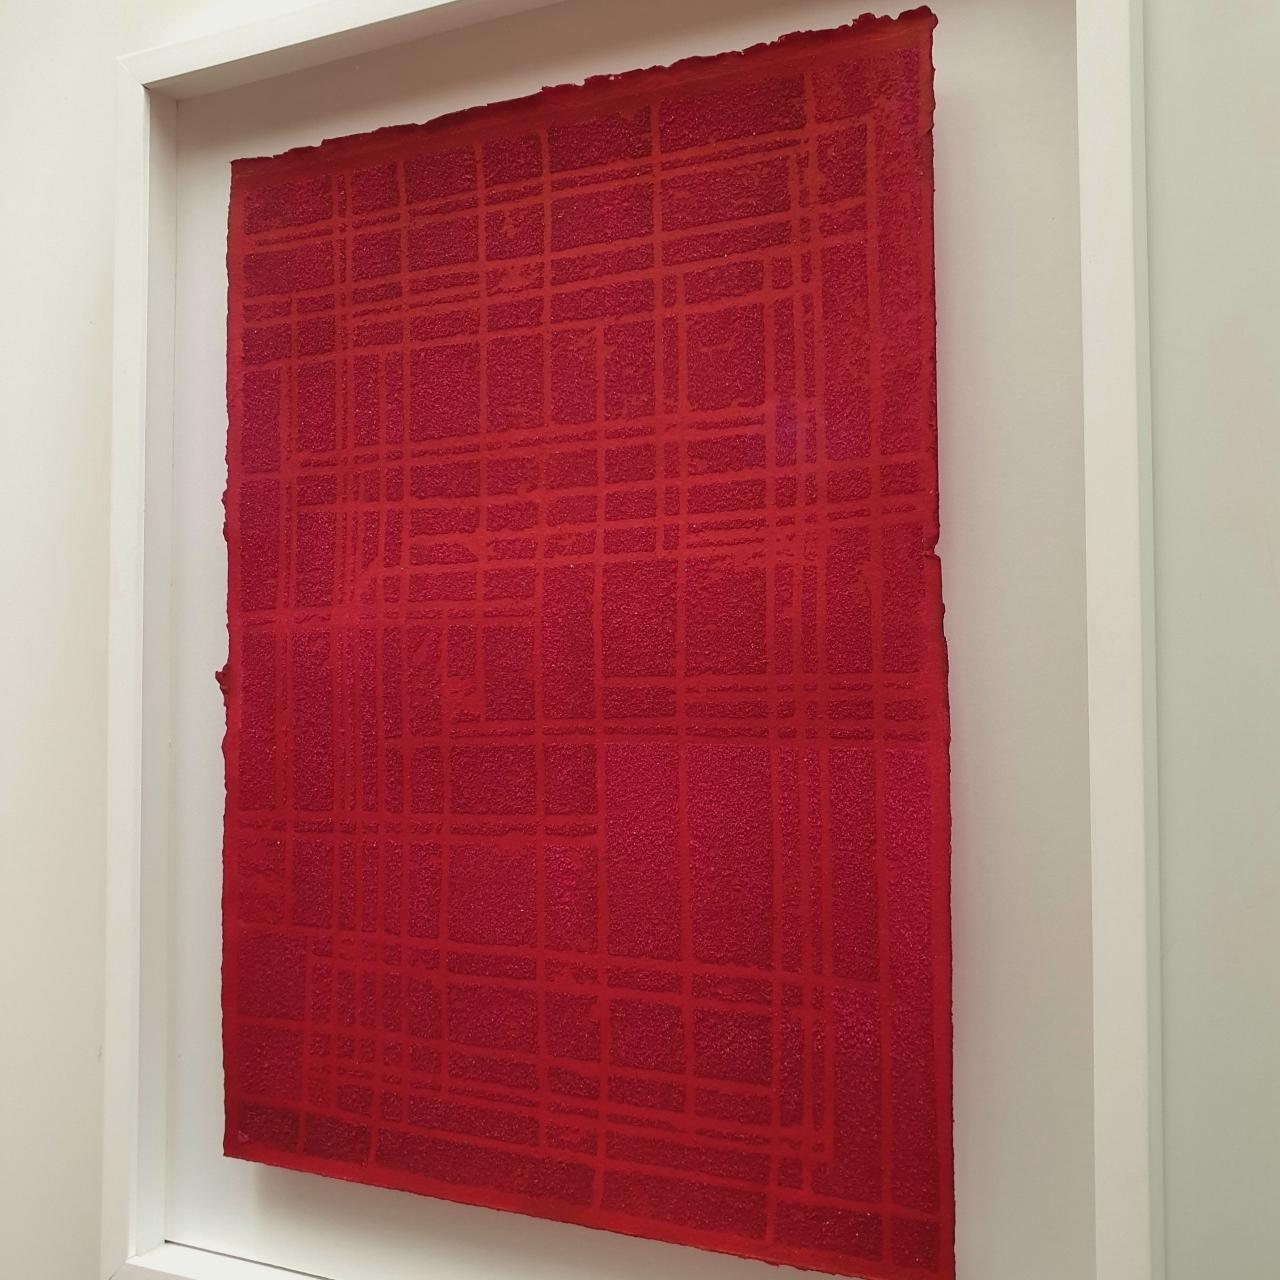 o.T. rot - zeitgenössischer moderner abstrakter geometrischer Steinschnitt-Monotypie-Druck (Rot), Abstract Painting, von Dieter Kränzlein